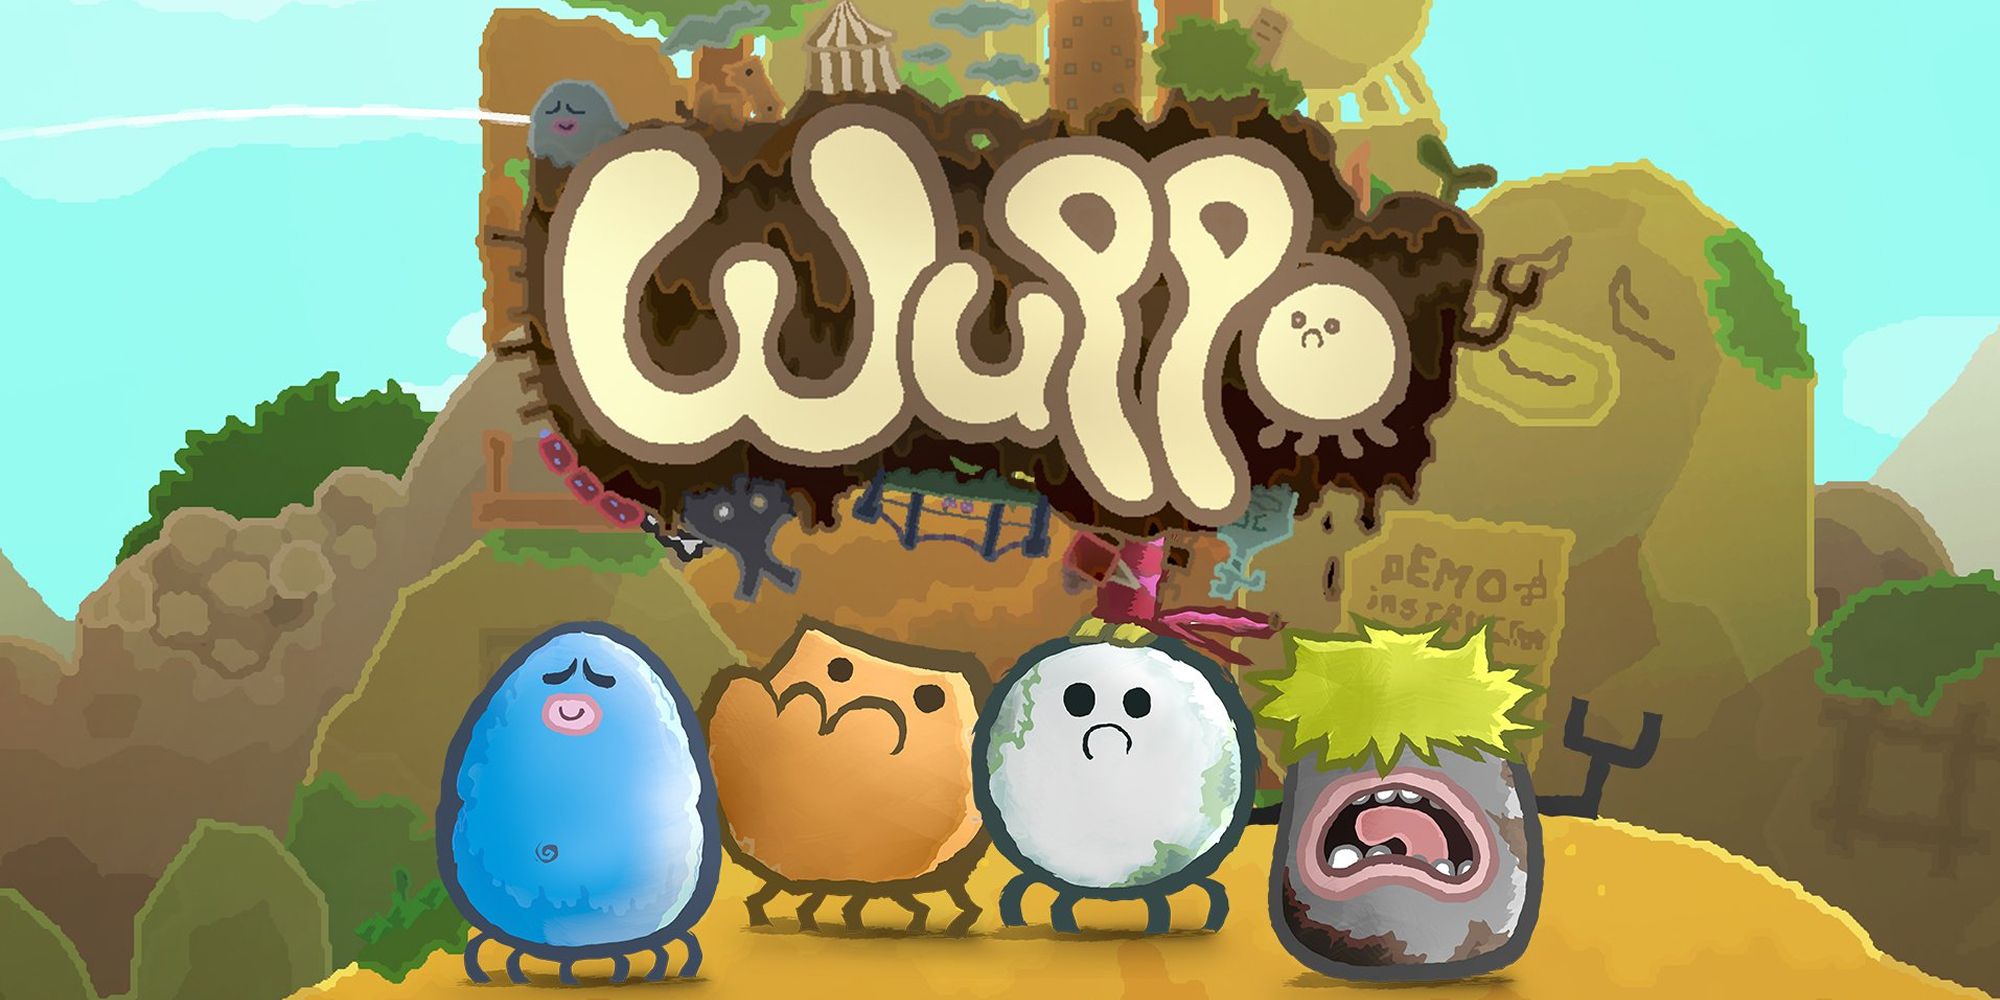 Wuppo title